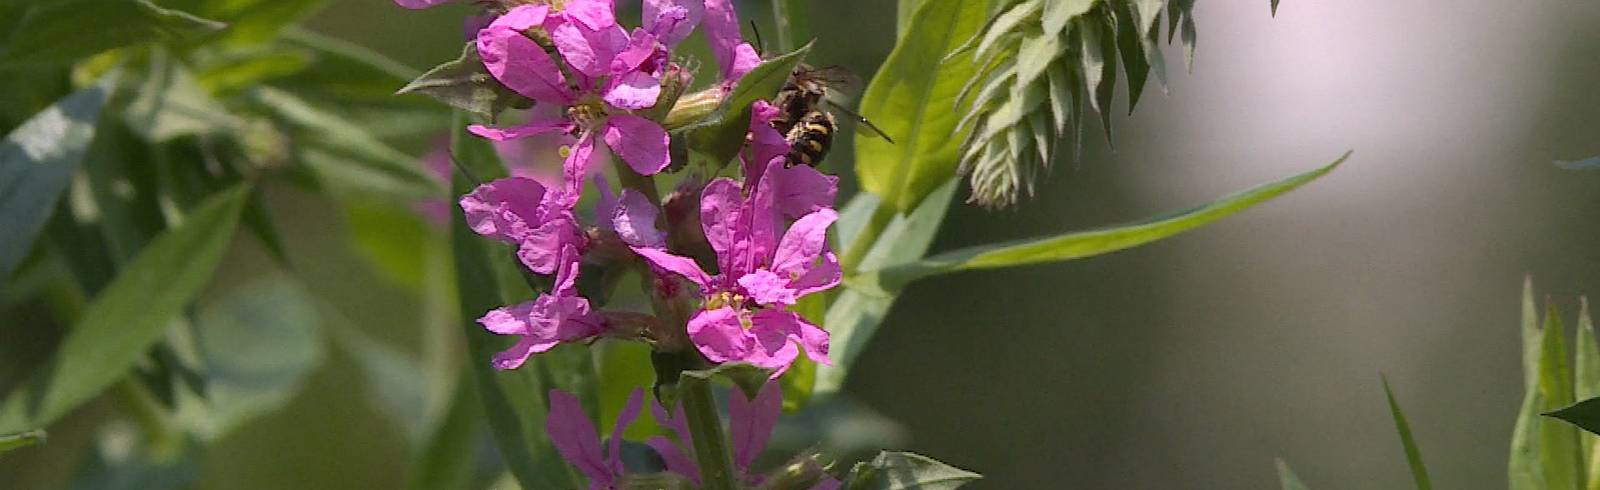 BOKU und Wiener Linien suchen nach Bienen